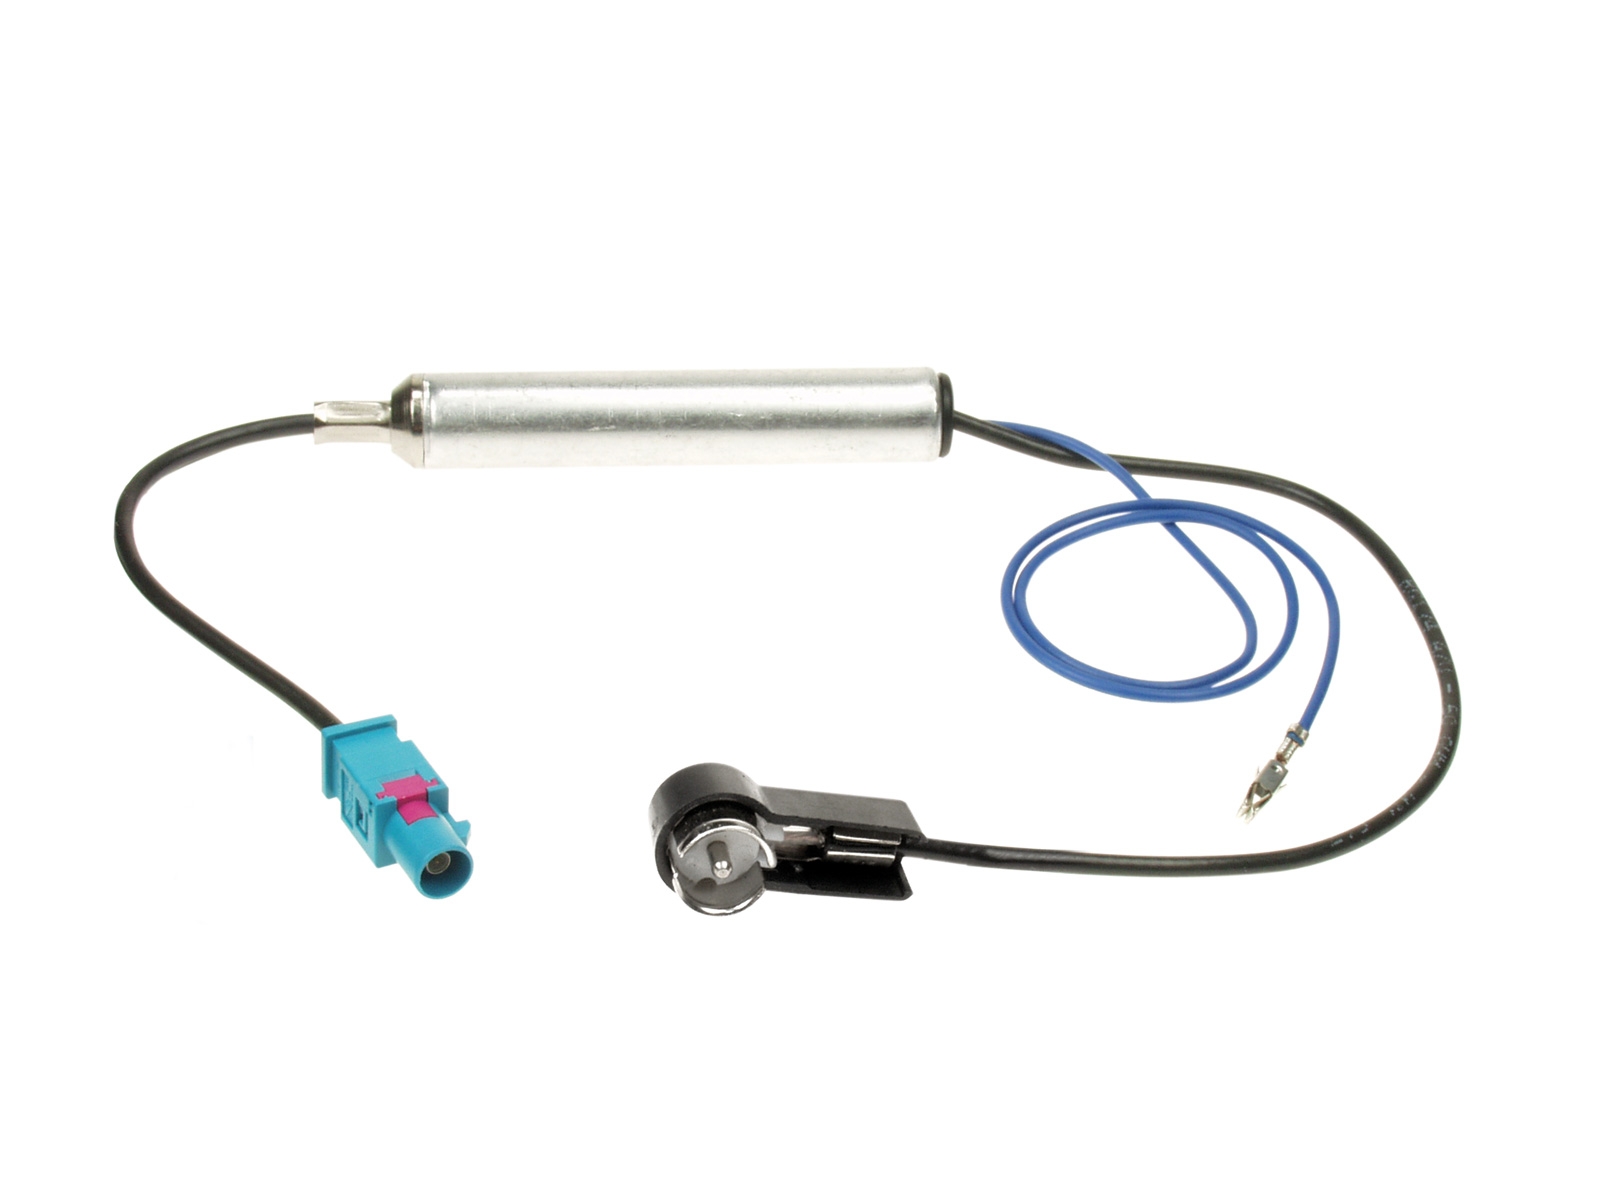 Antennenadapter kompatibel mit Ford Phantomspeisung adaptiert von Fakra (m) auf ISO (m)